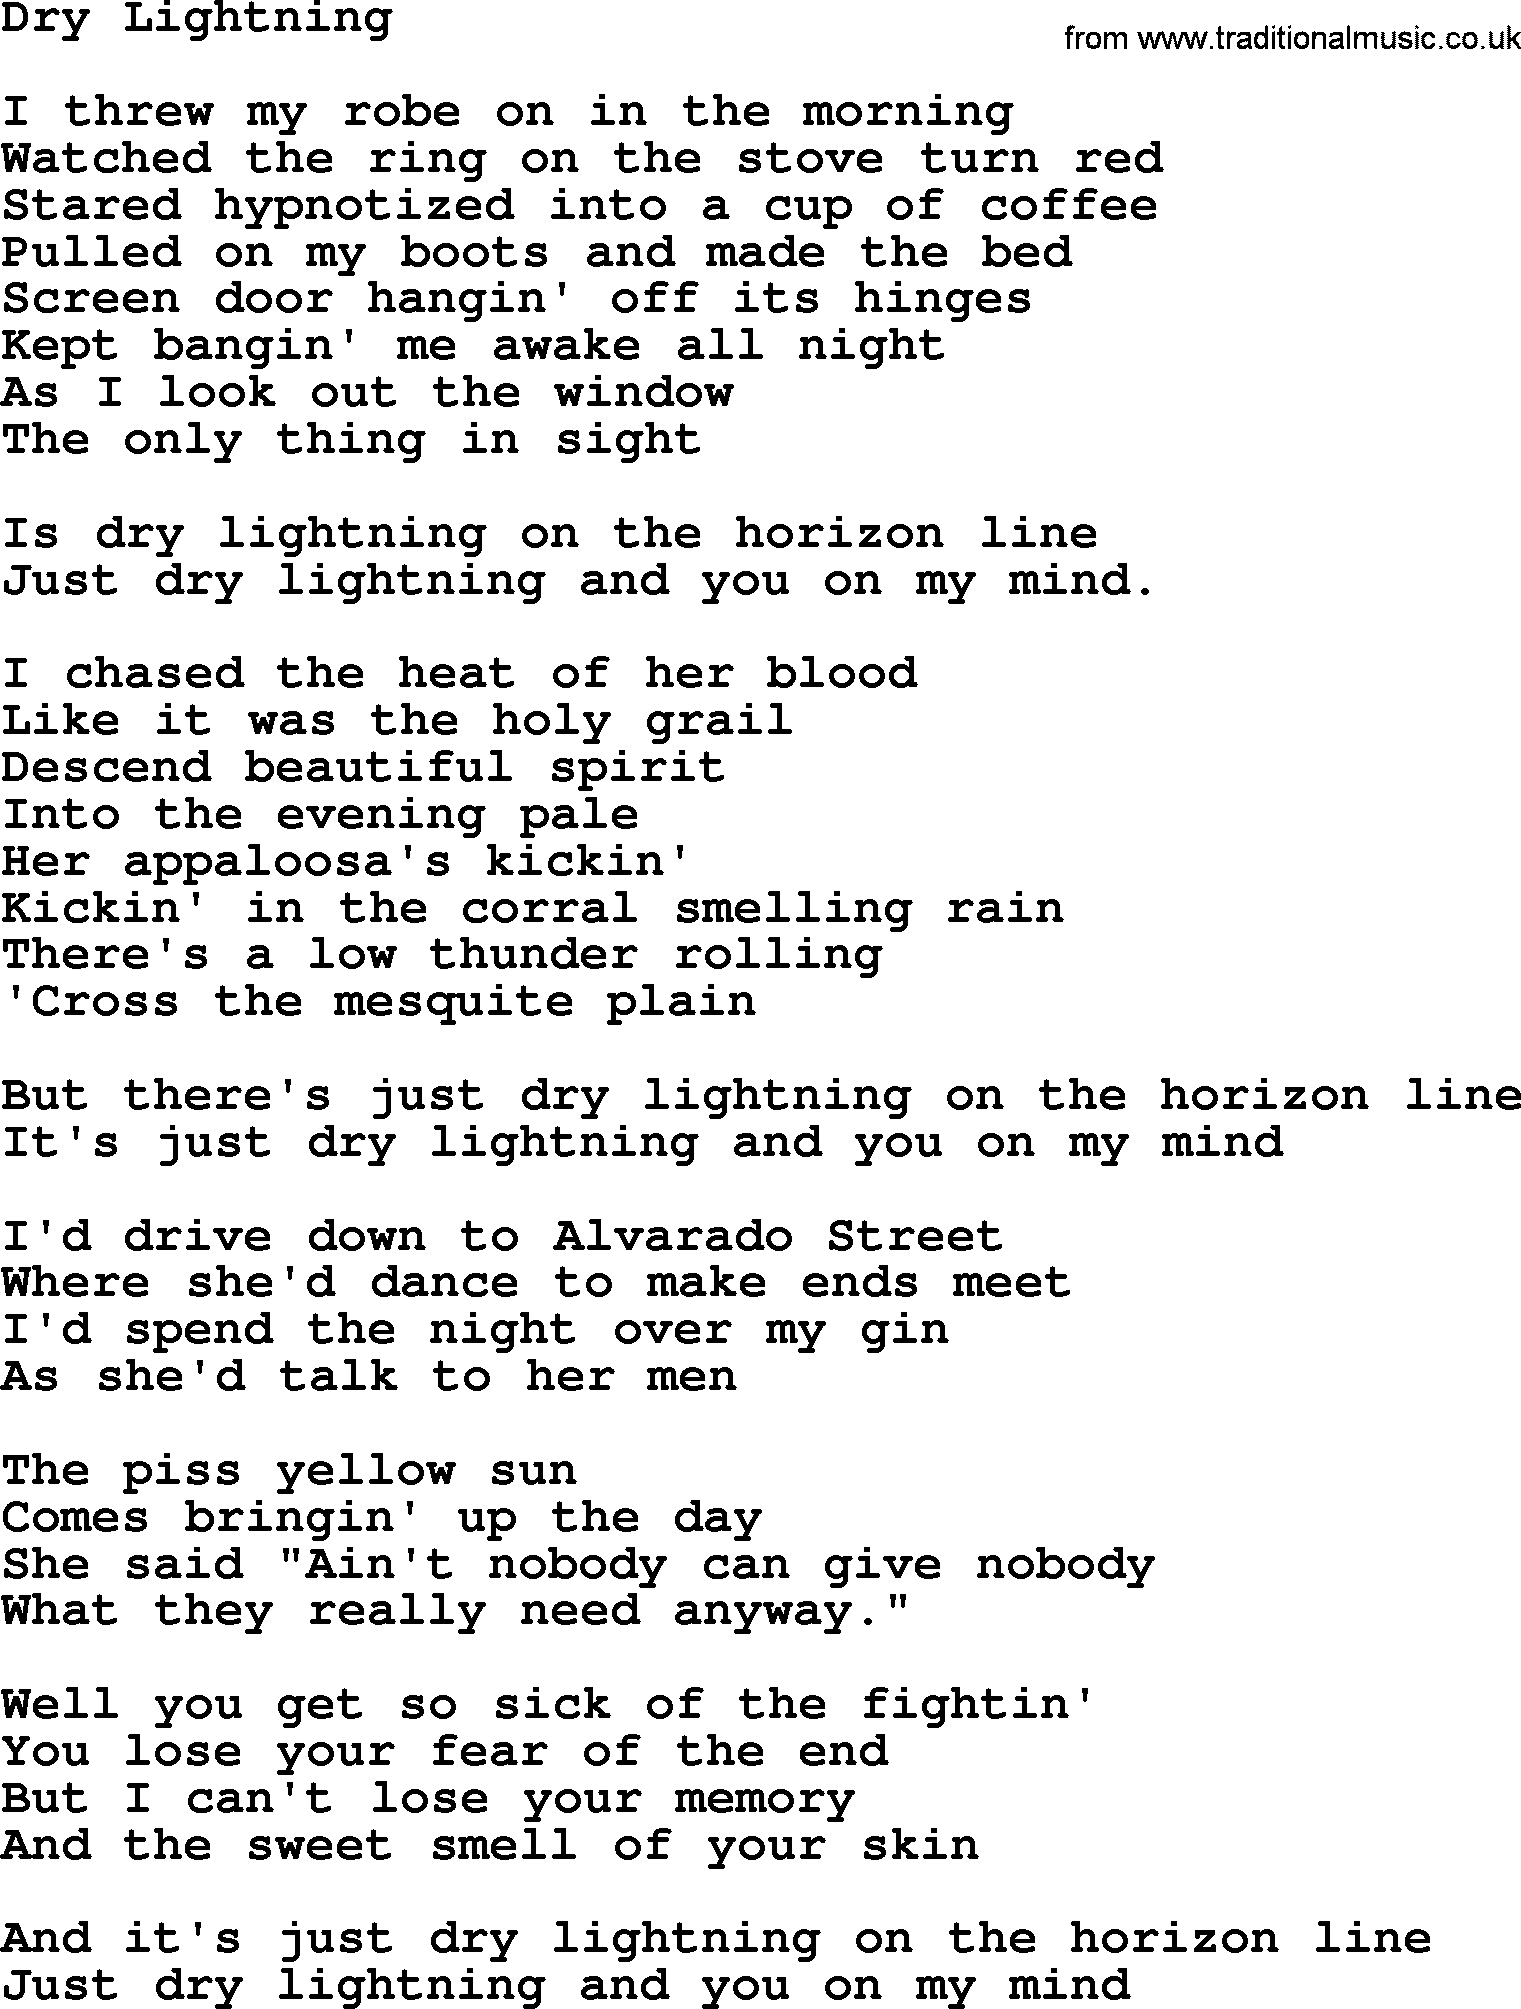 Willie Nelson song: Dry Lightning lyrics